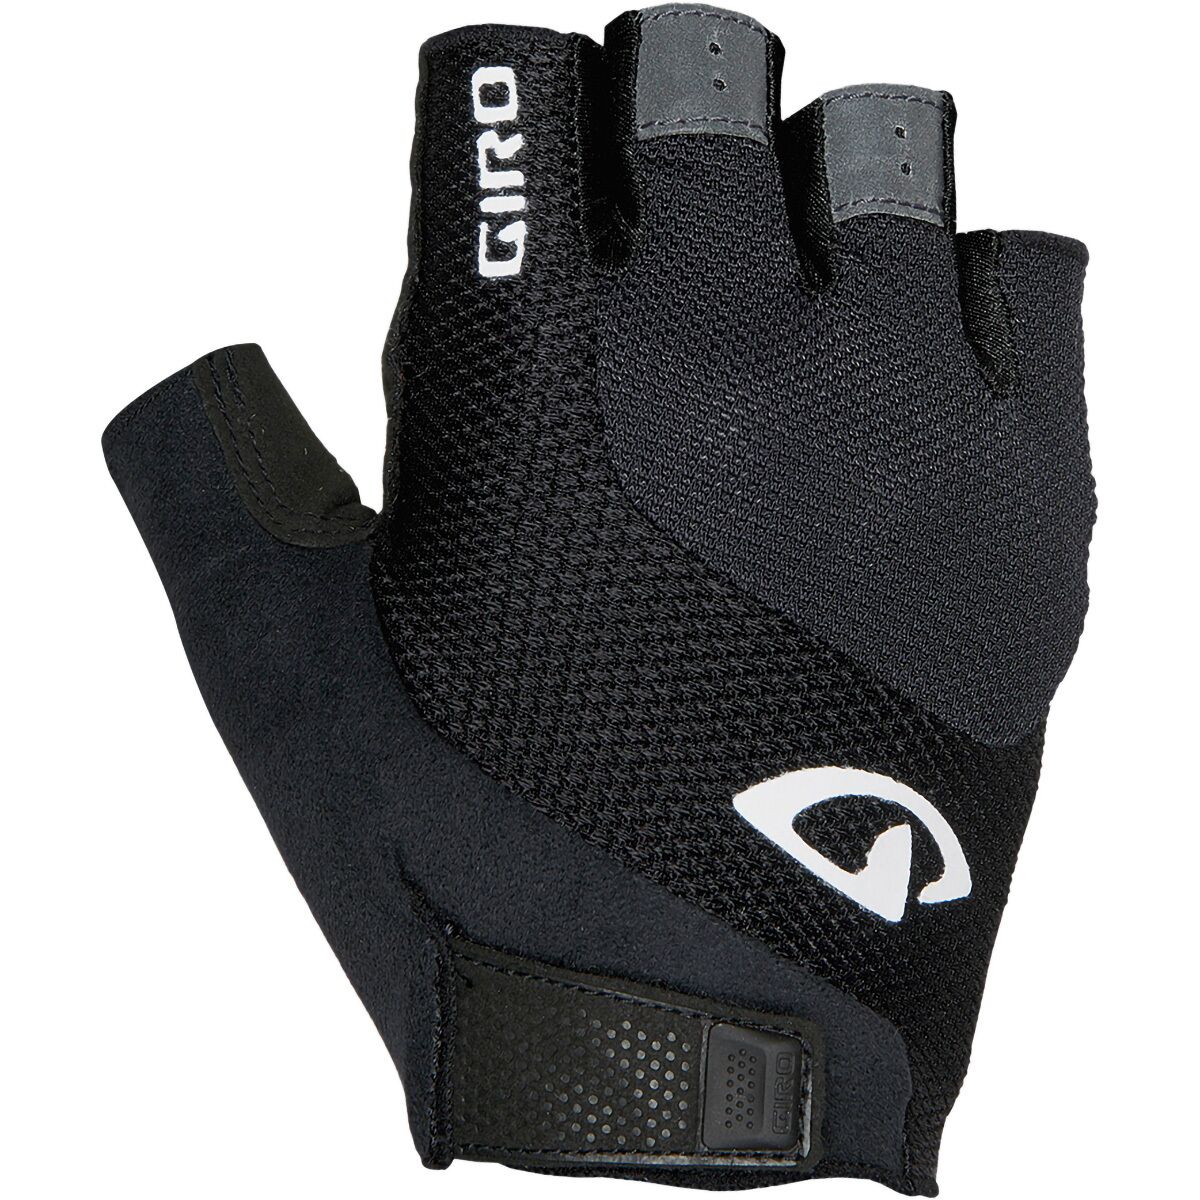 Giro Tessa Gel Glove - Women's Black, M